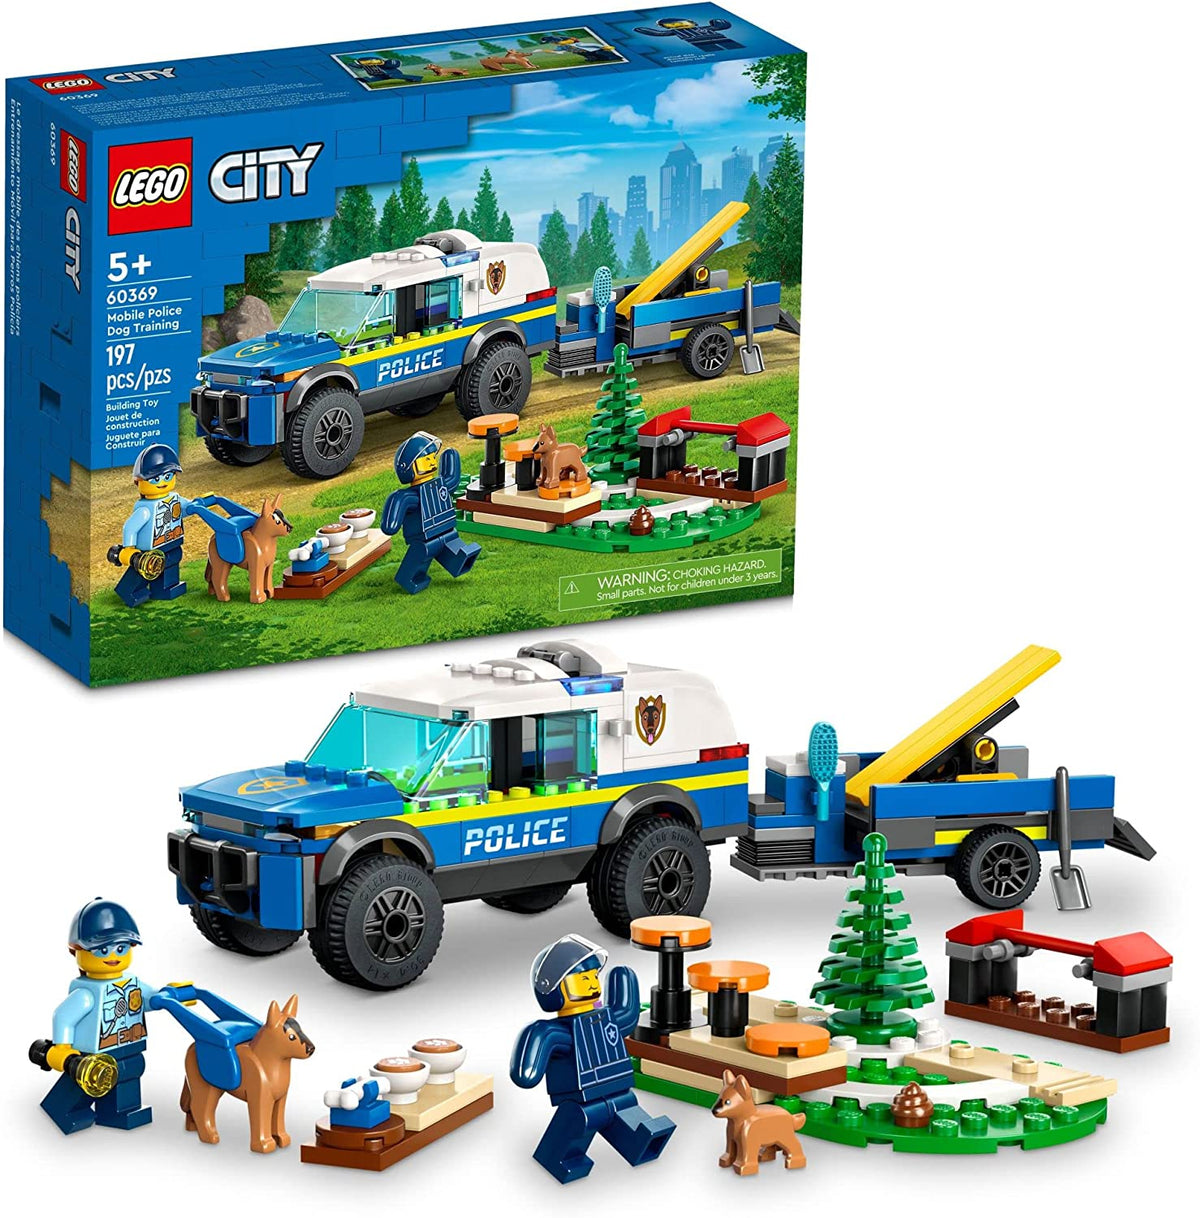 LEGO City: Mobile Police Dog Training (60369)